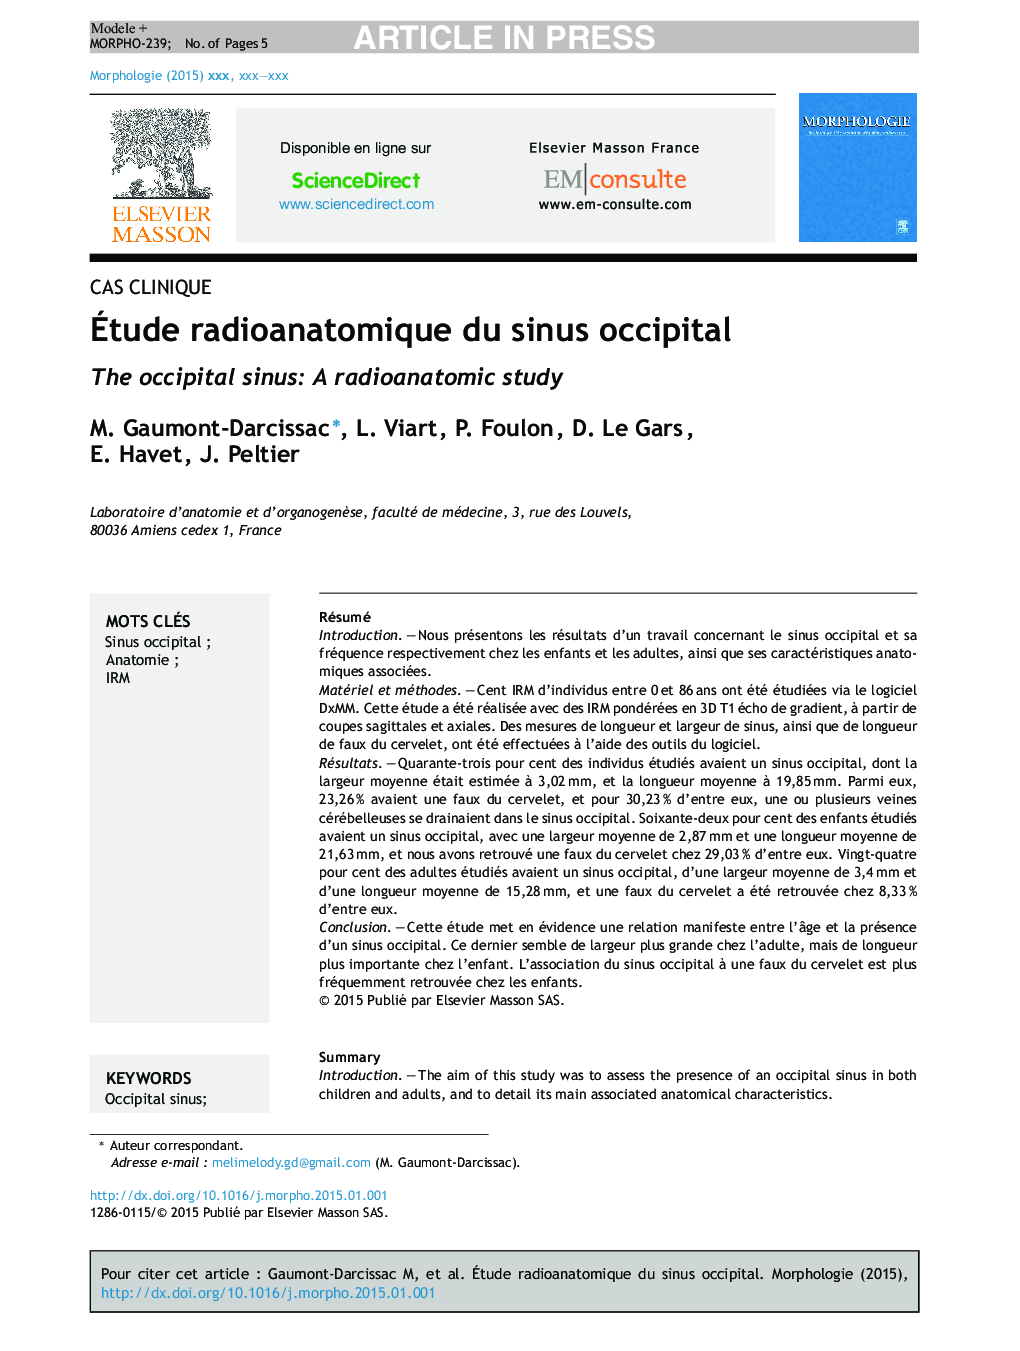 Ãtude radioanatomique du sinus occipital